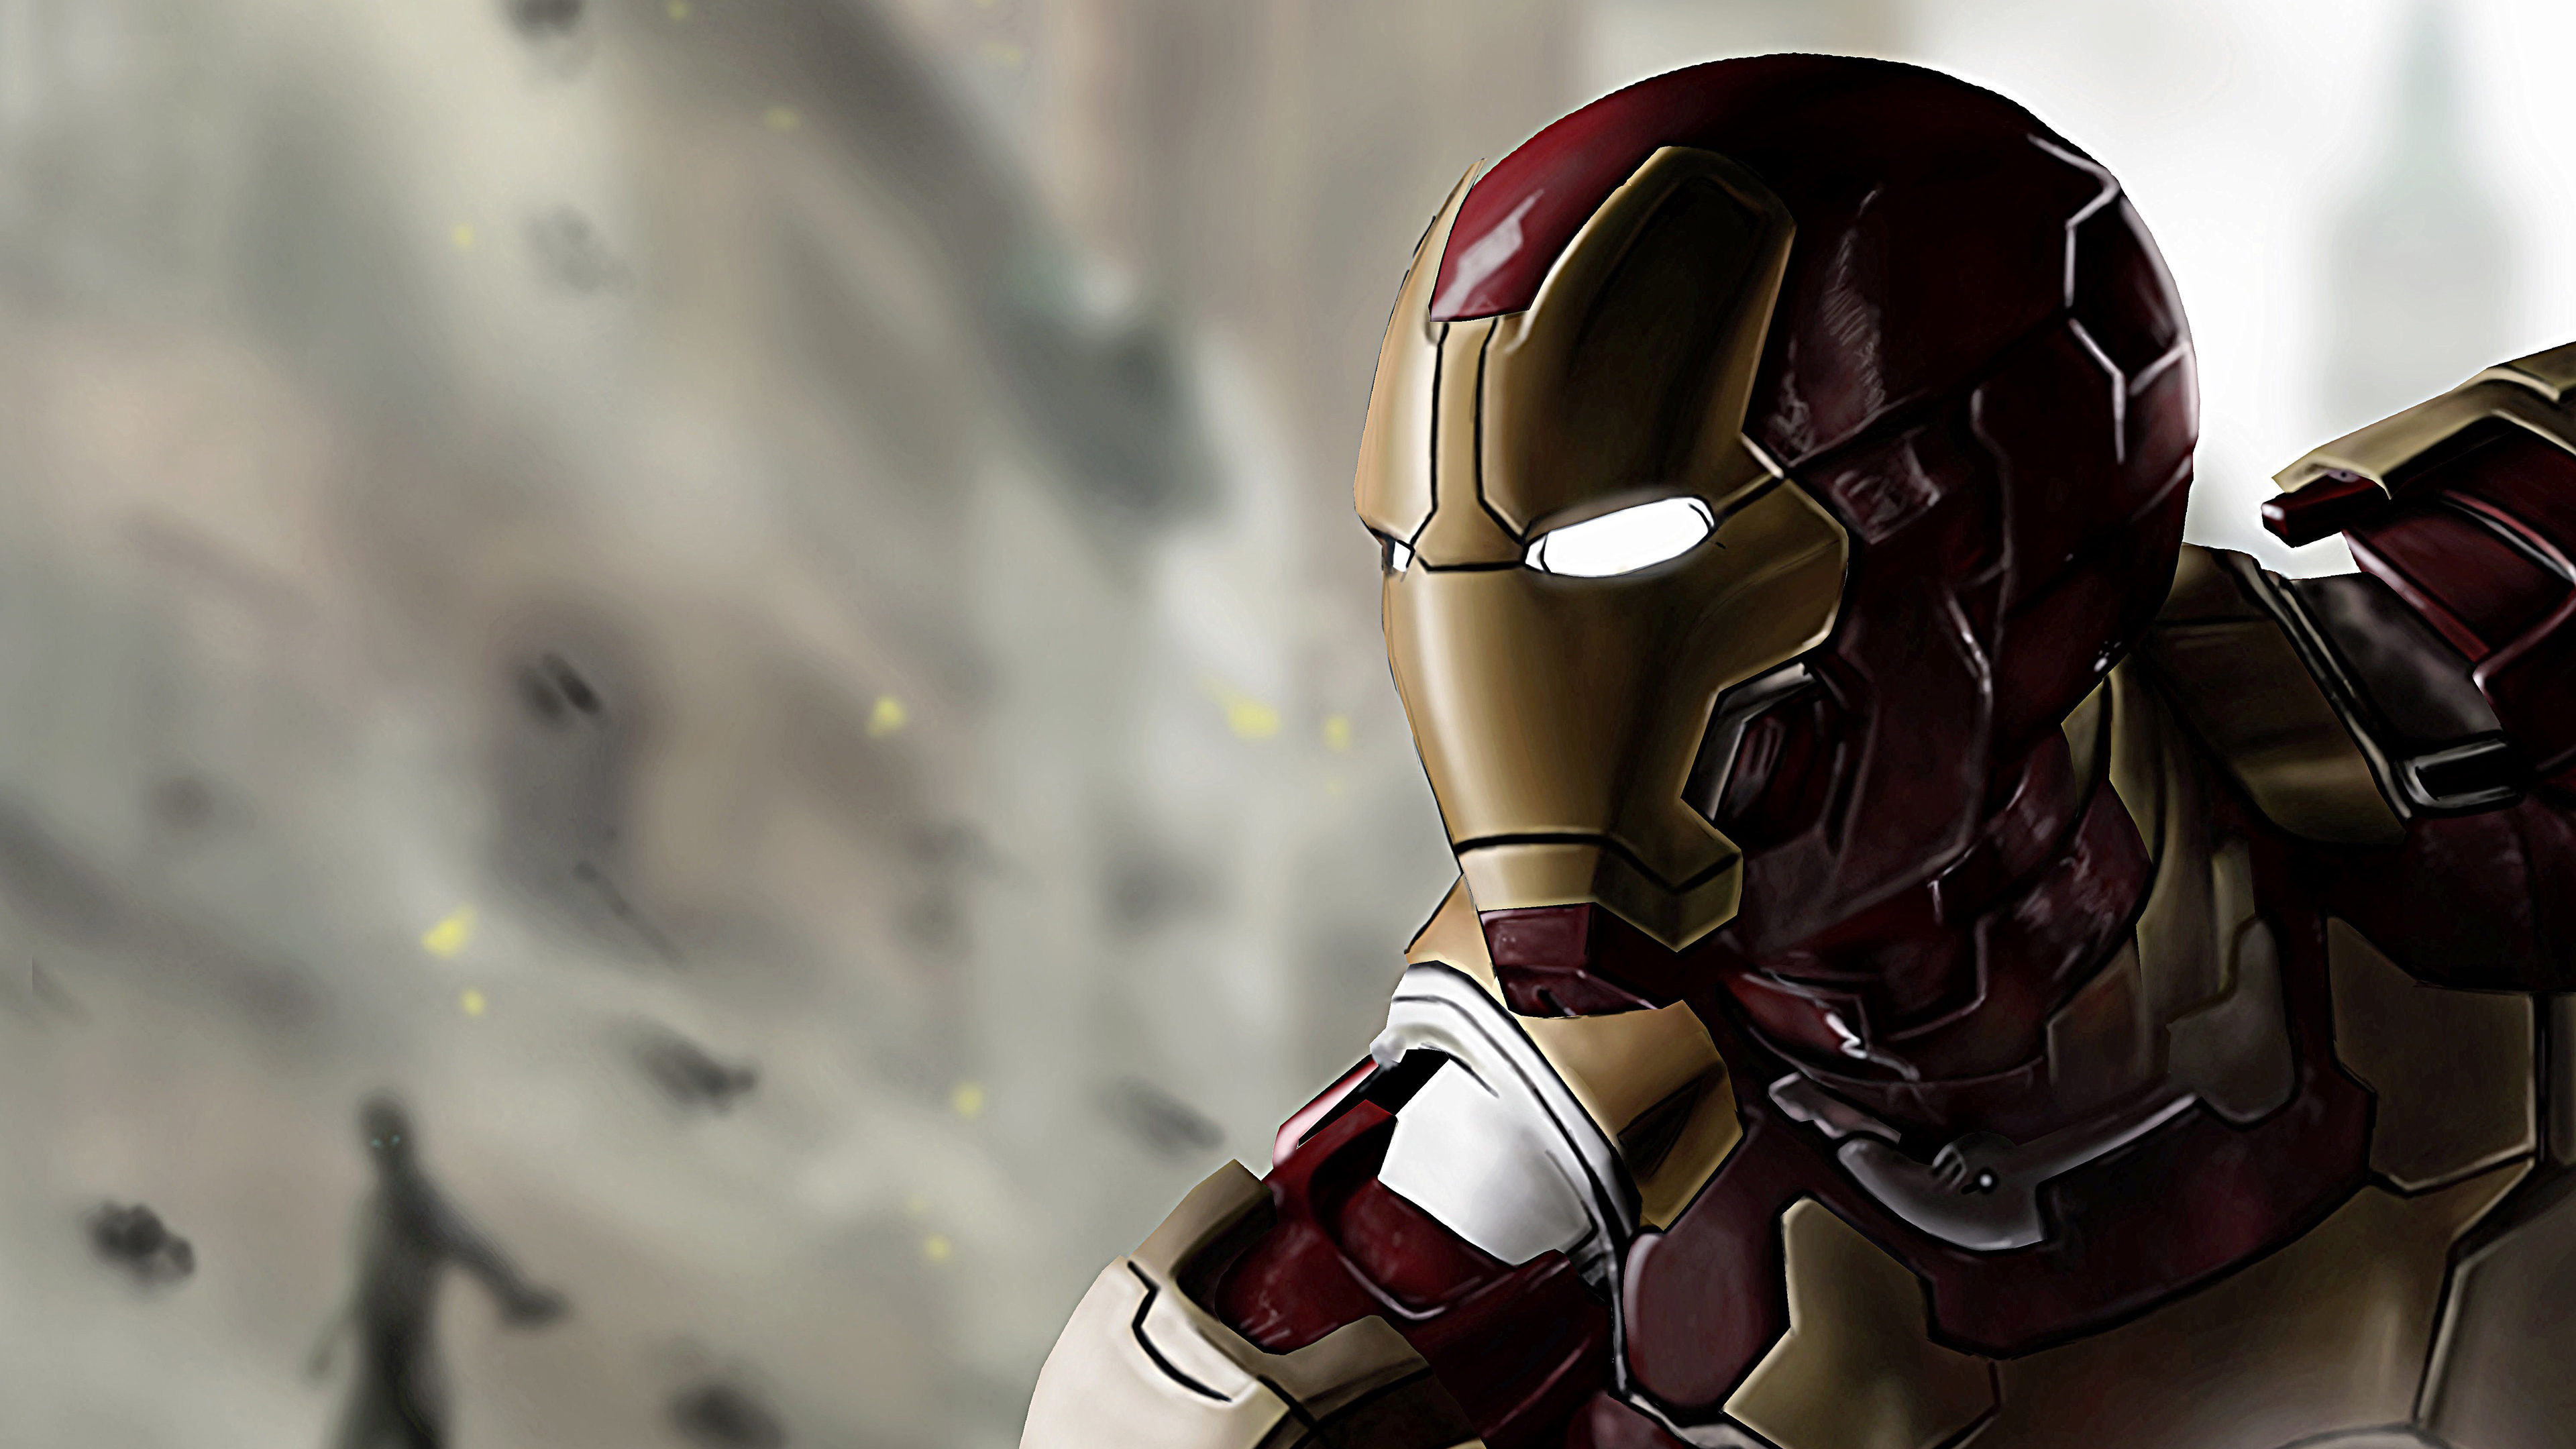 iron man hd fondo de pantalla descargar,hombre de acero,personaje de ficción,superhéroe,cg artwork,armadura